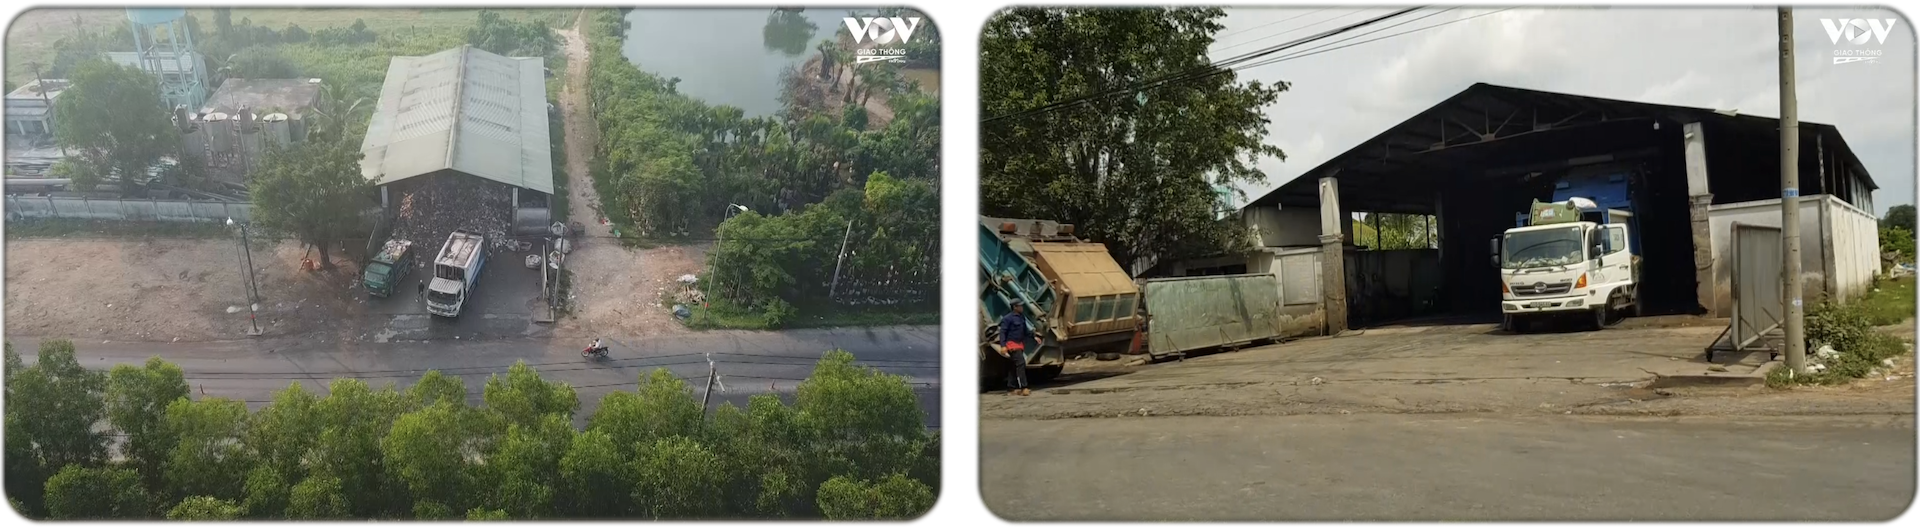 Trạm trung chuyển rác huyện Củ Chi tại tỉnh lộ 8 (thuộc xã Tân An Hội)